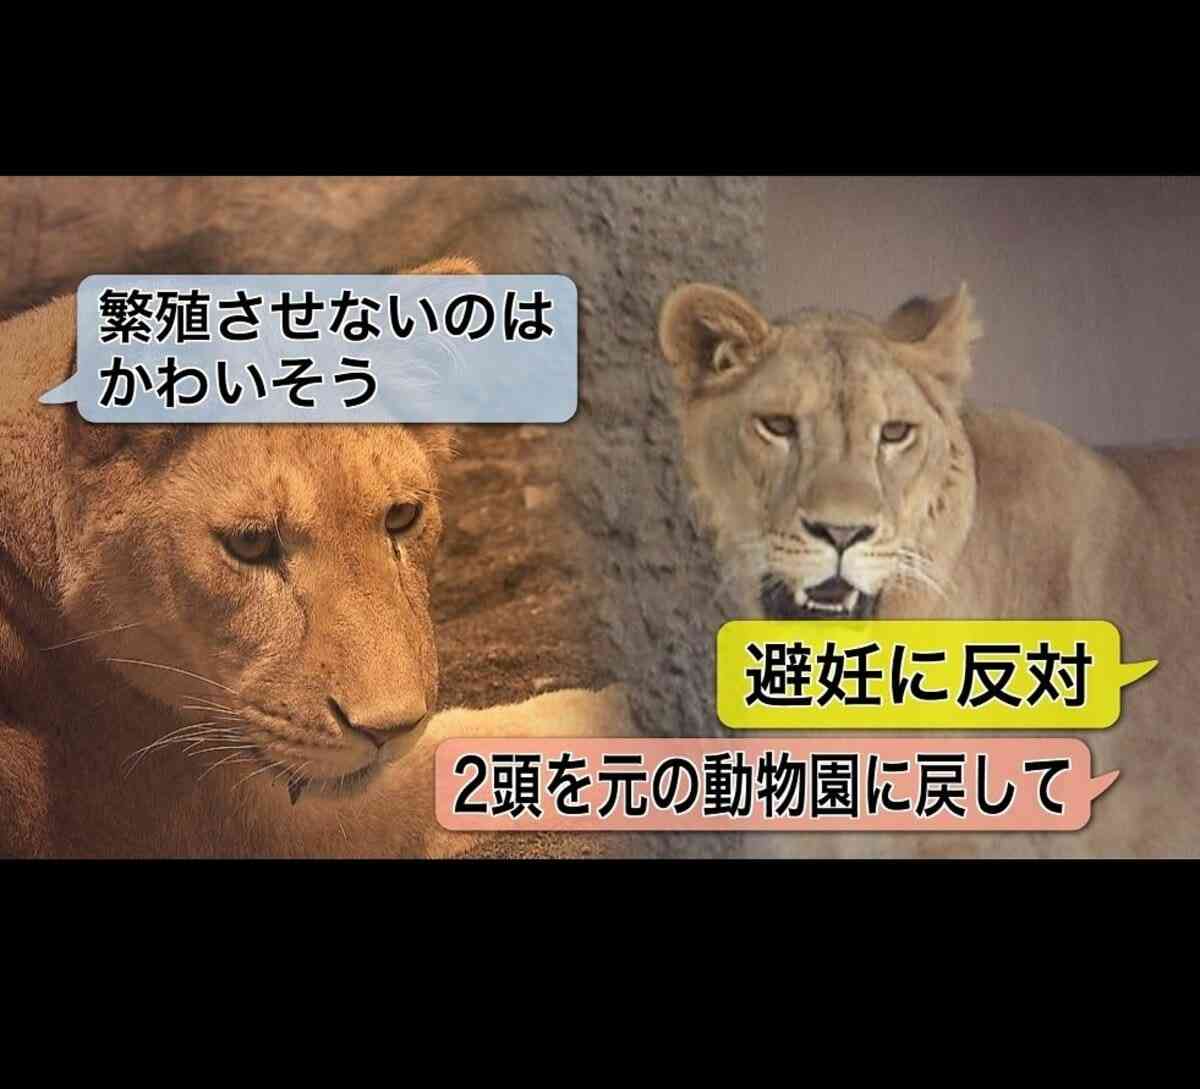 「繁殖させないのはかわいそう」ライオンの"避妊"を公表した動物園に批判殺到…実は”百獣の王”の飼育数は飽和状態に…ライオン避妊 決断の背景とは